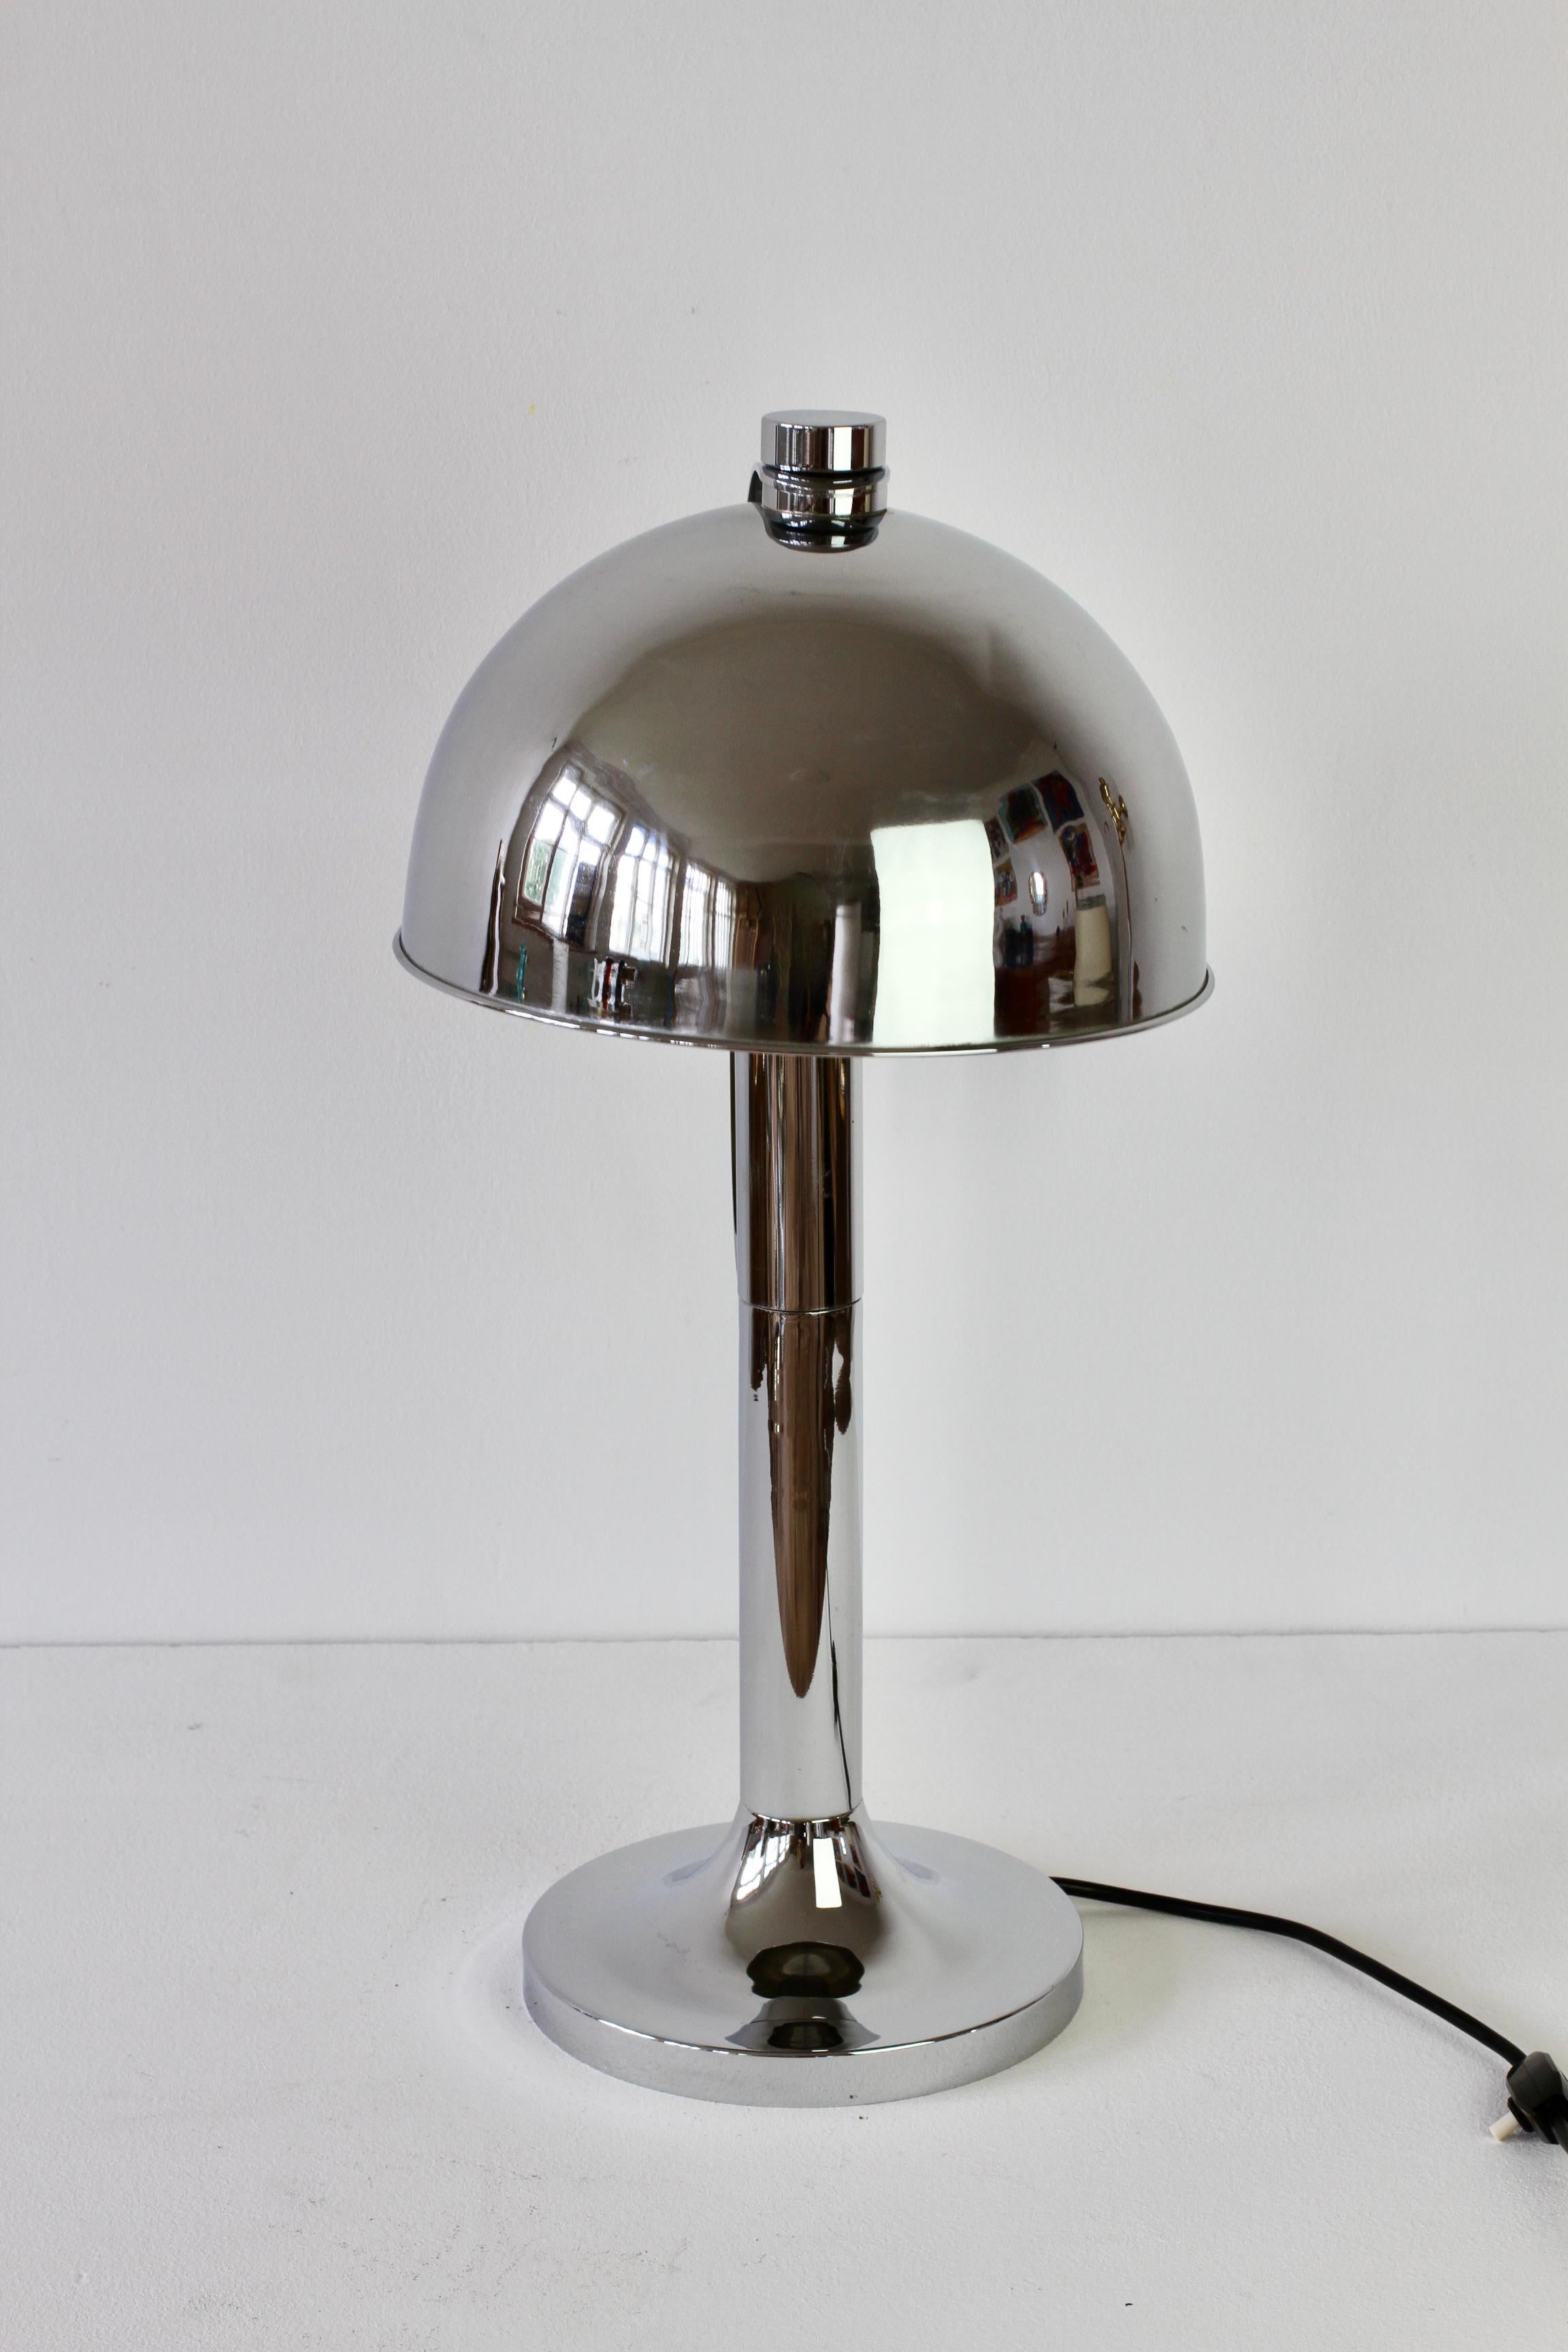 Seltene Mid-Century Modern Tischlampe oder Schreibtischlampe von Florian Schulz aus Deutschland um 1970. Mit ihren polierten, verchromten Messingbeschlägen (jetzt mit altersbedingter Patina) und dem verstellbaren, runden Schirm ist sie die perfekte